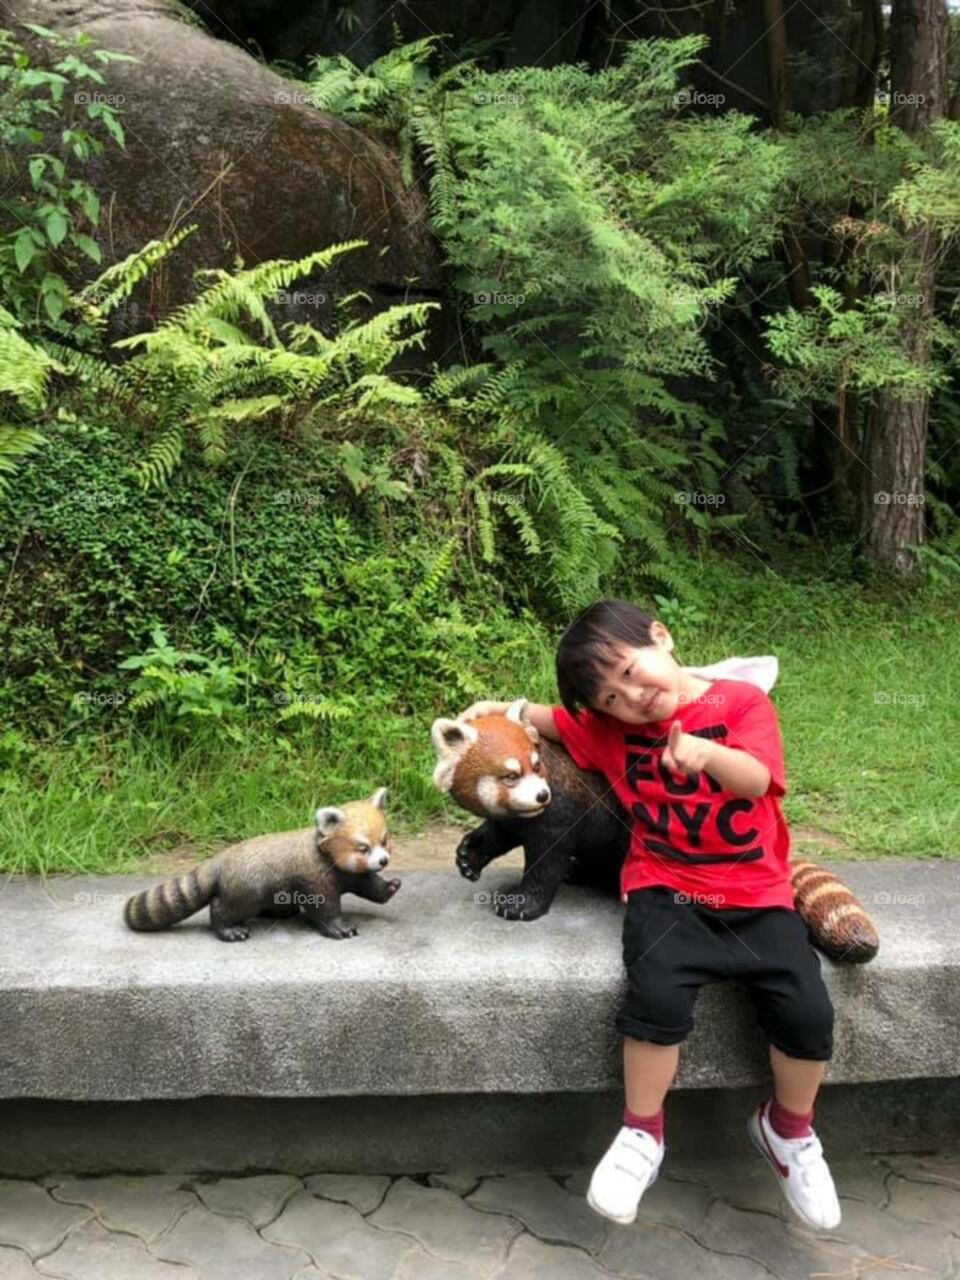 Taipei zoo children